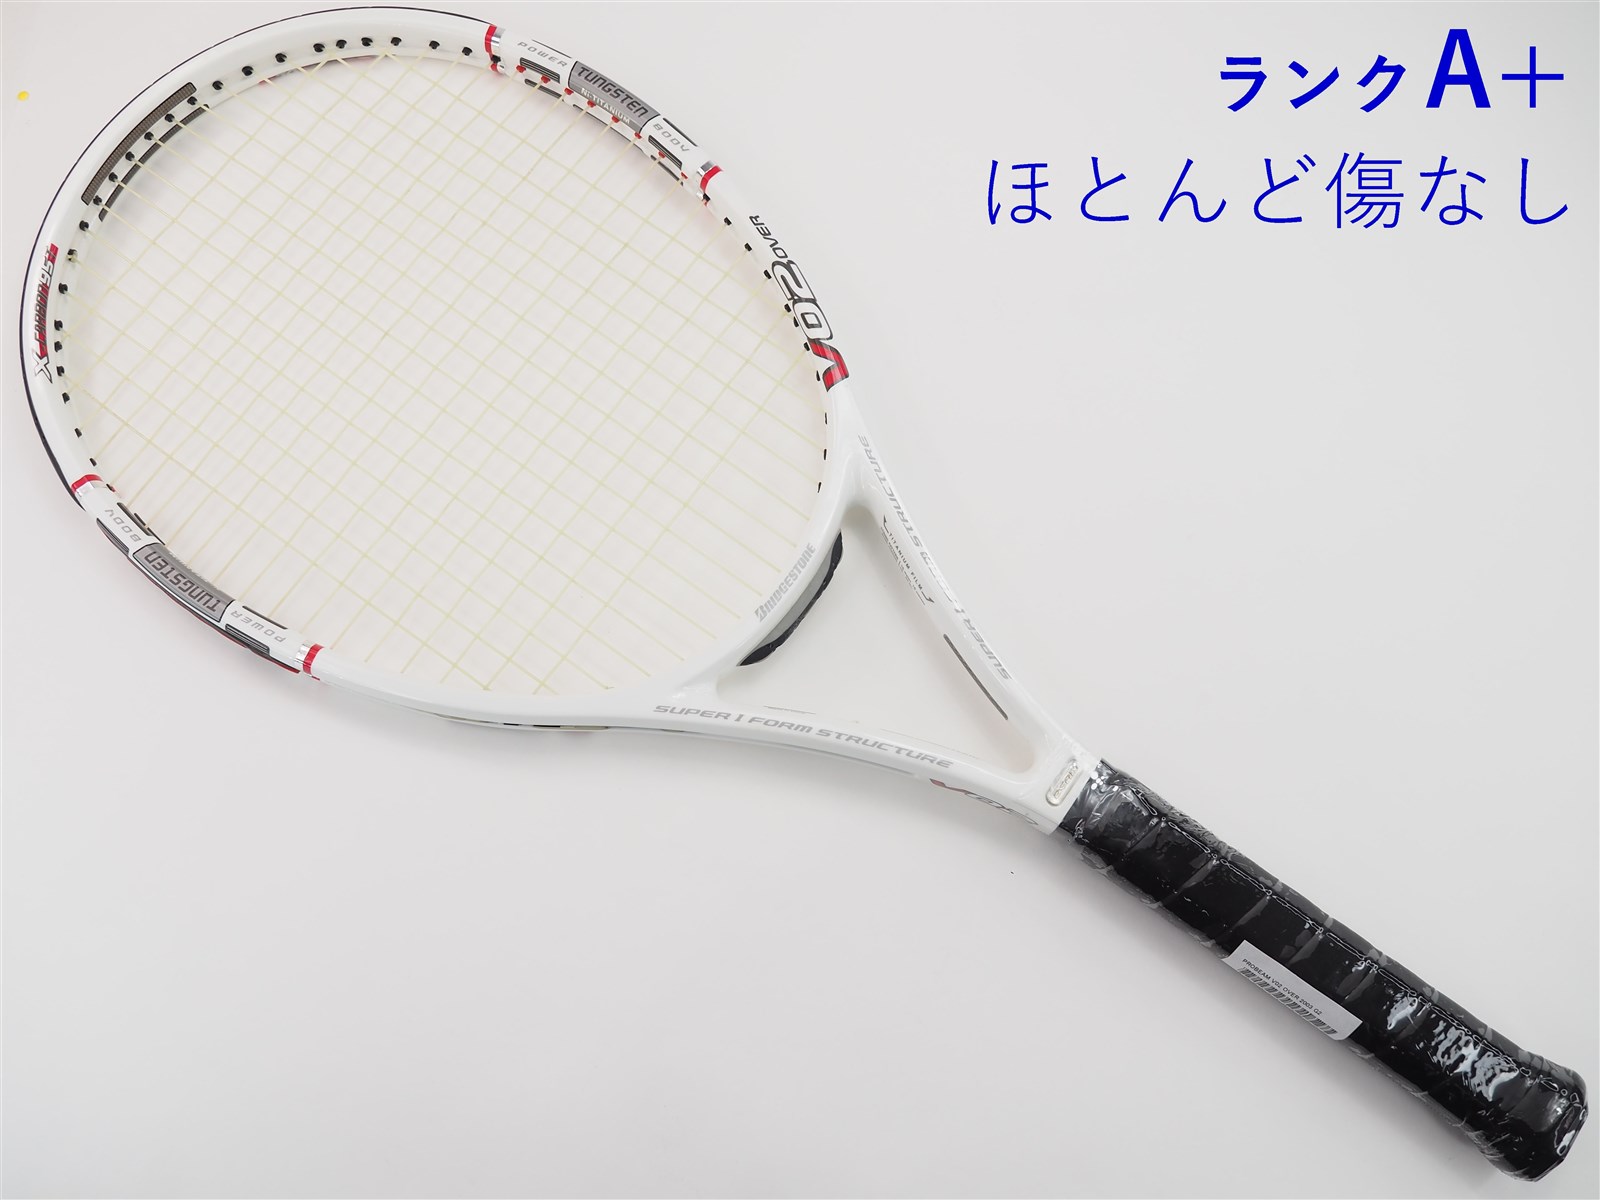 テニスラケット ブリヂストン プロビーム V-QB 2.6 2006年モデル【多数グロメット割れ有り】 (G2)BRIDGESTONE PROBEAM V-QB 2.6 2006261ｇ張り上げガット状態